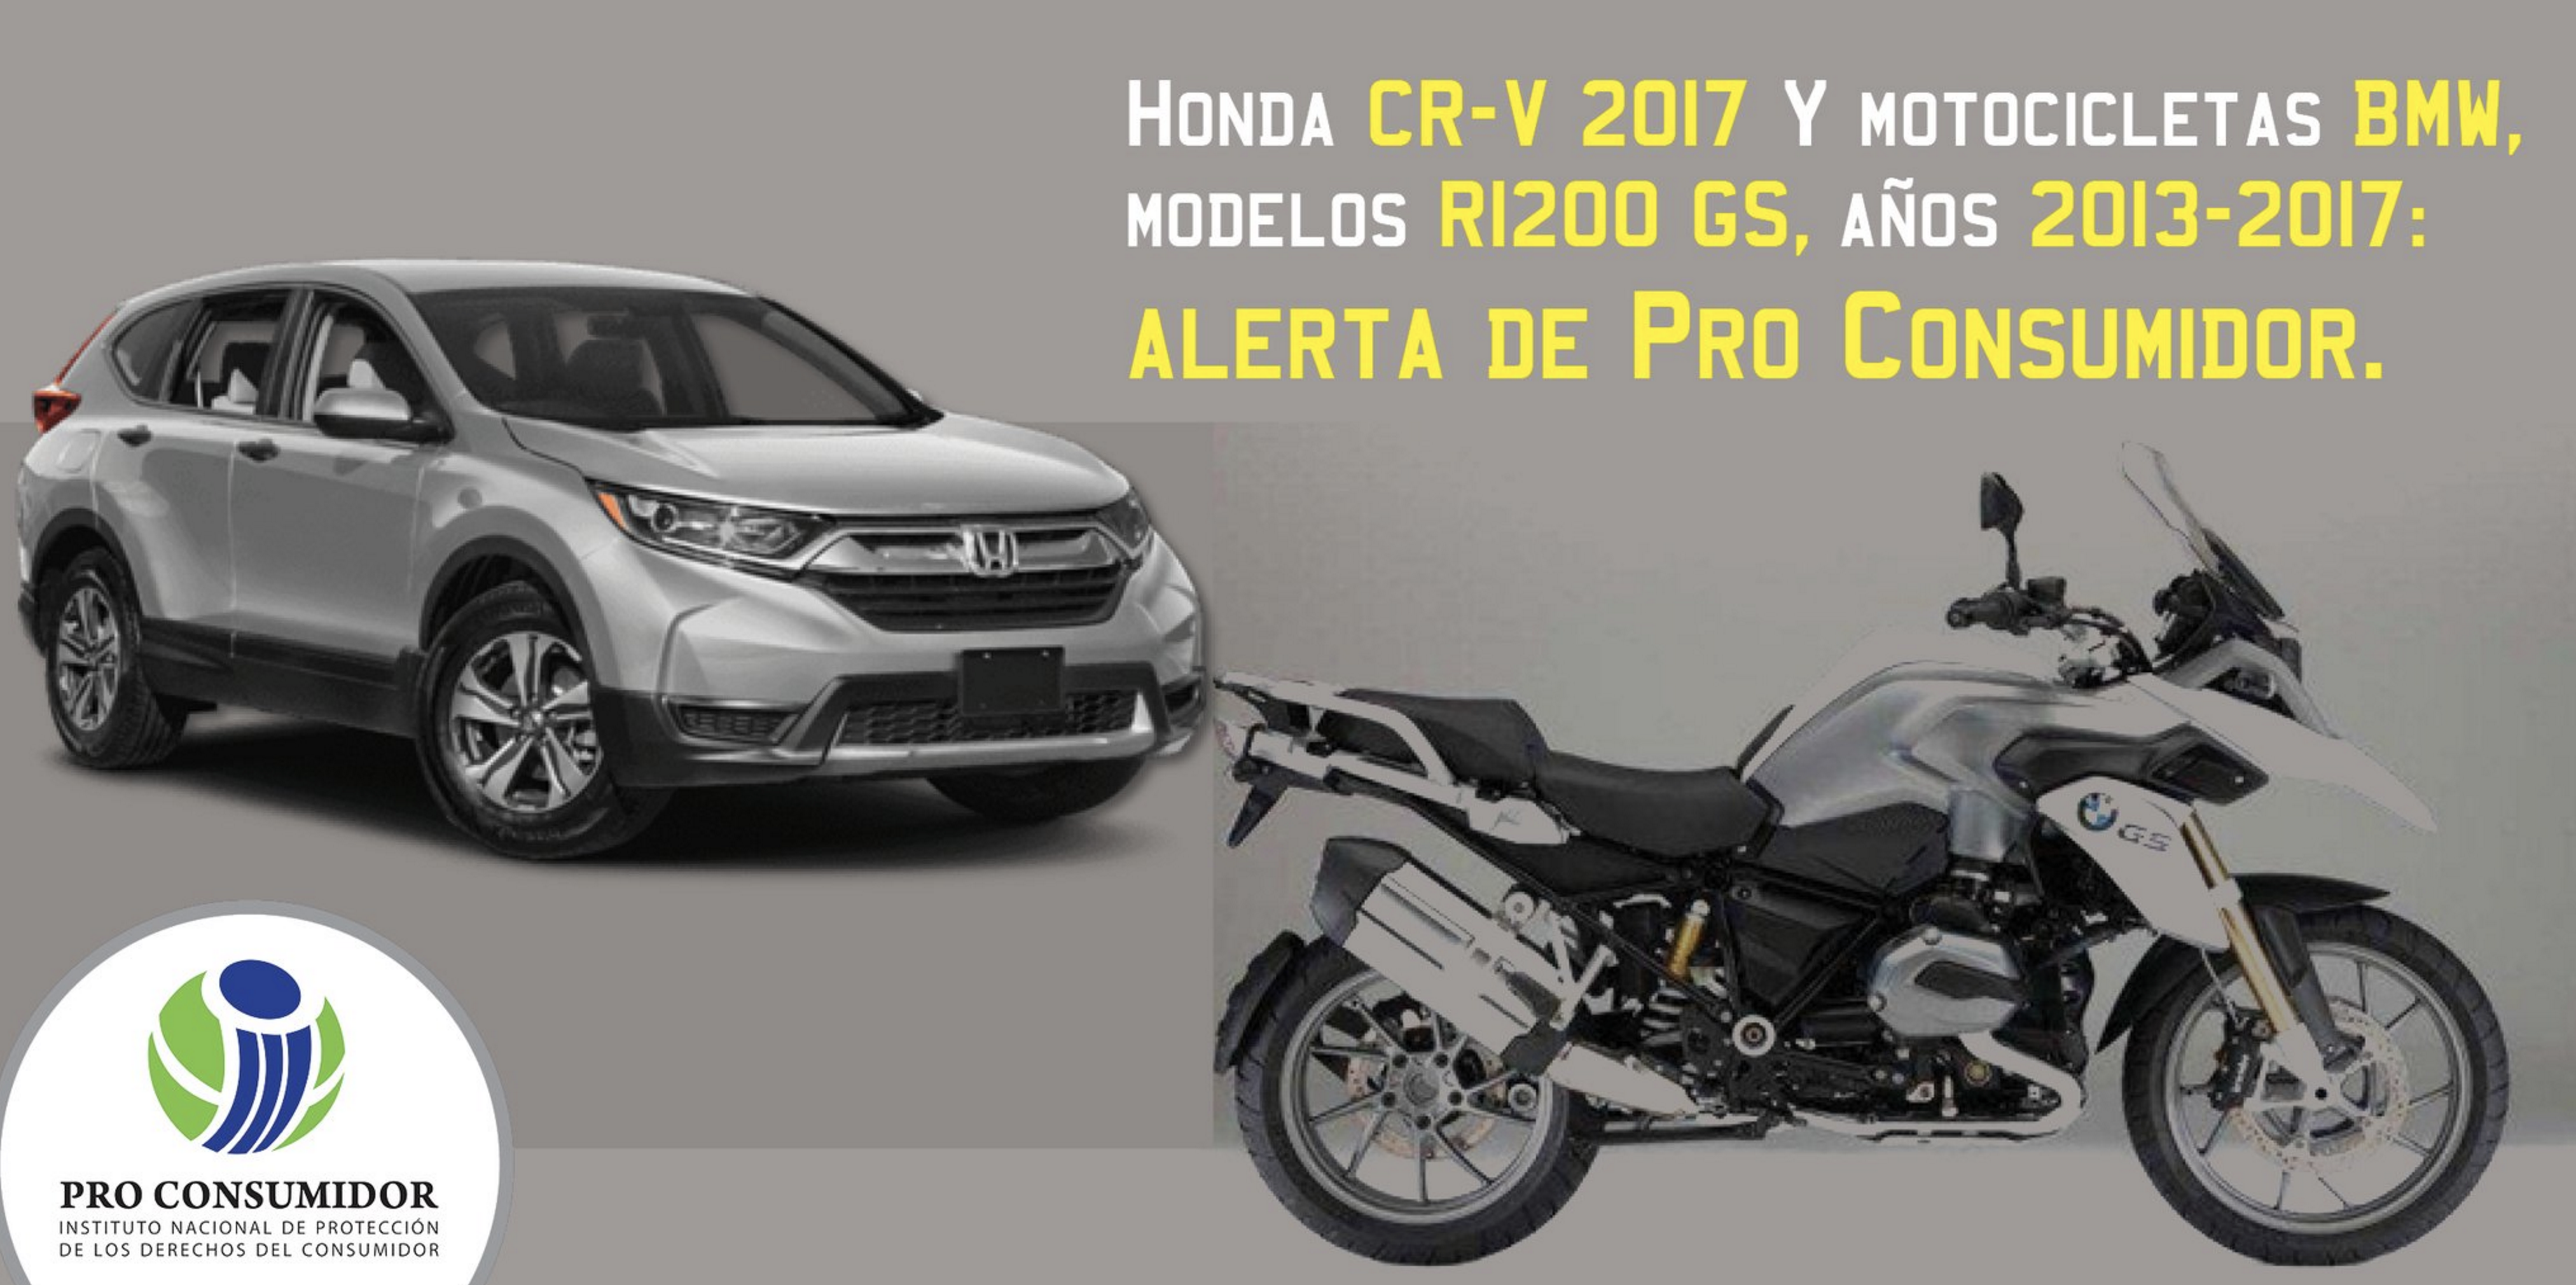 Última Hora : Honda CR-V 2017 Y Motocicletas BMW, Modelos R1200 GS, Años 2013-2017, Alerta De ProConsumidor